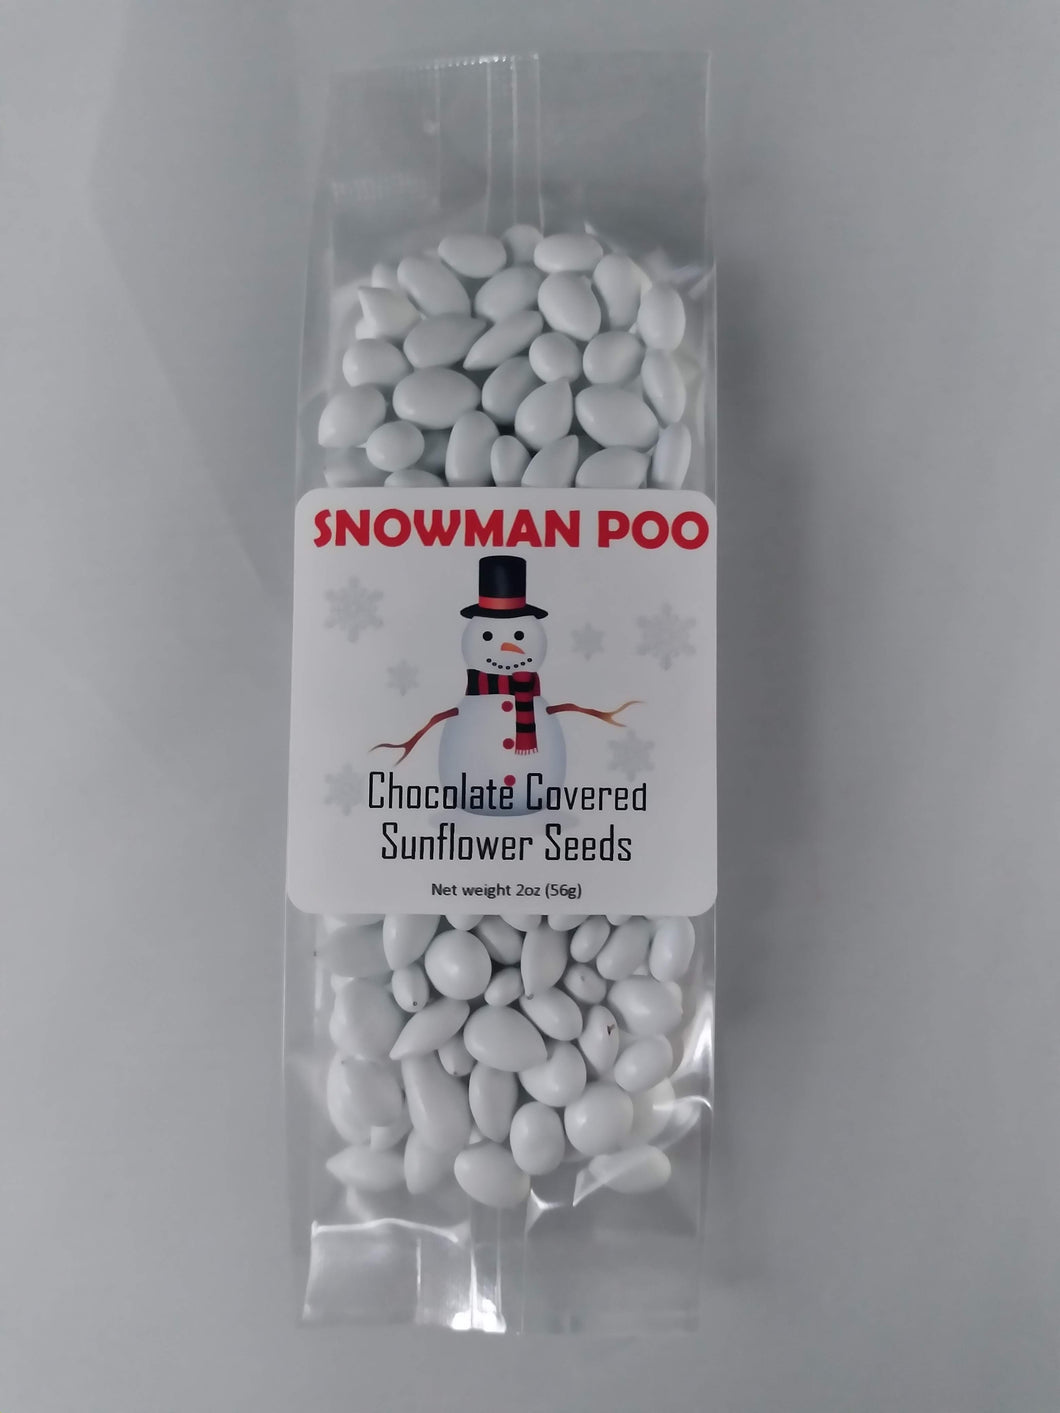 Snowman Poo - Taste Of The Rockies